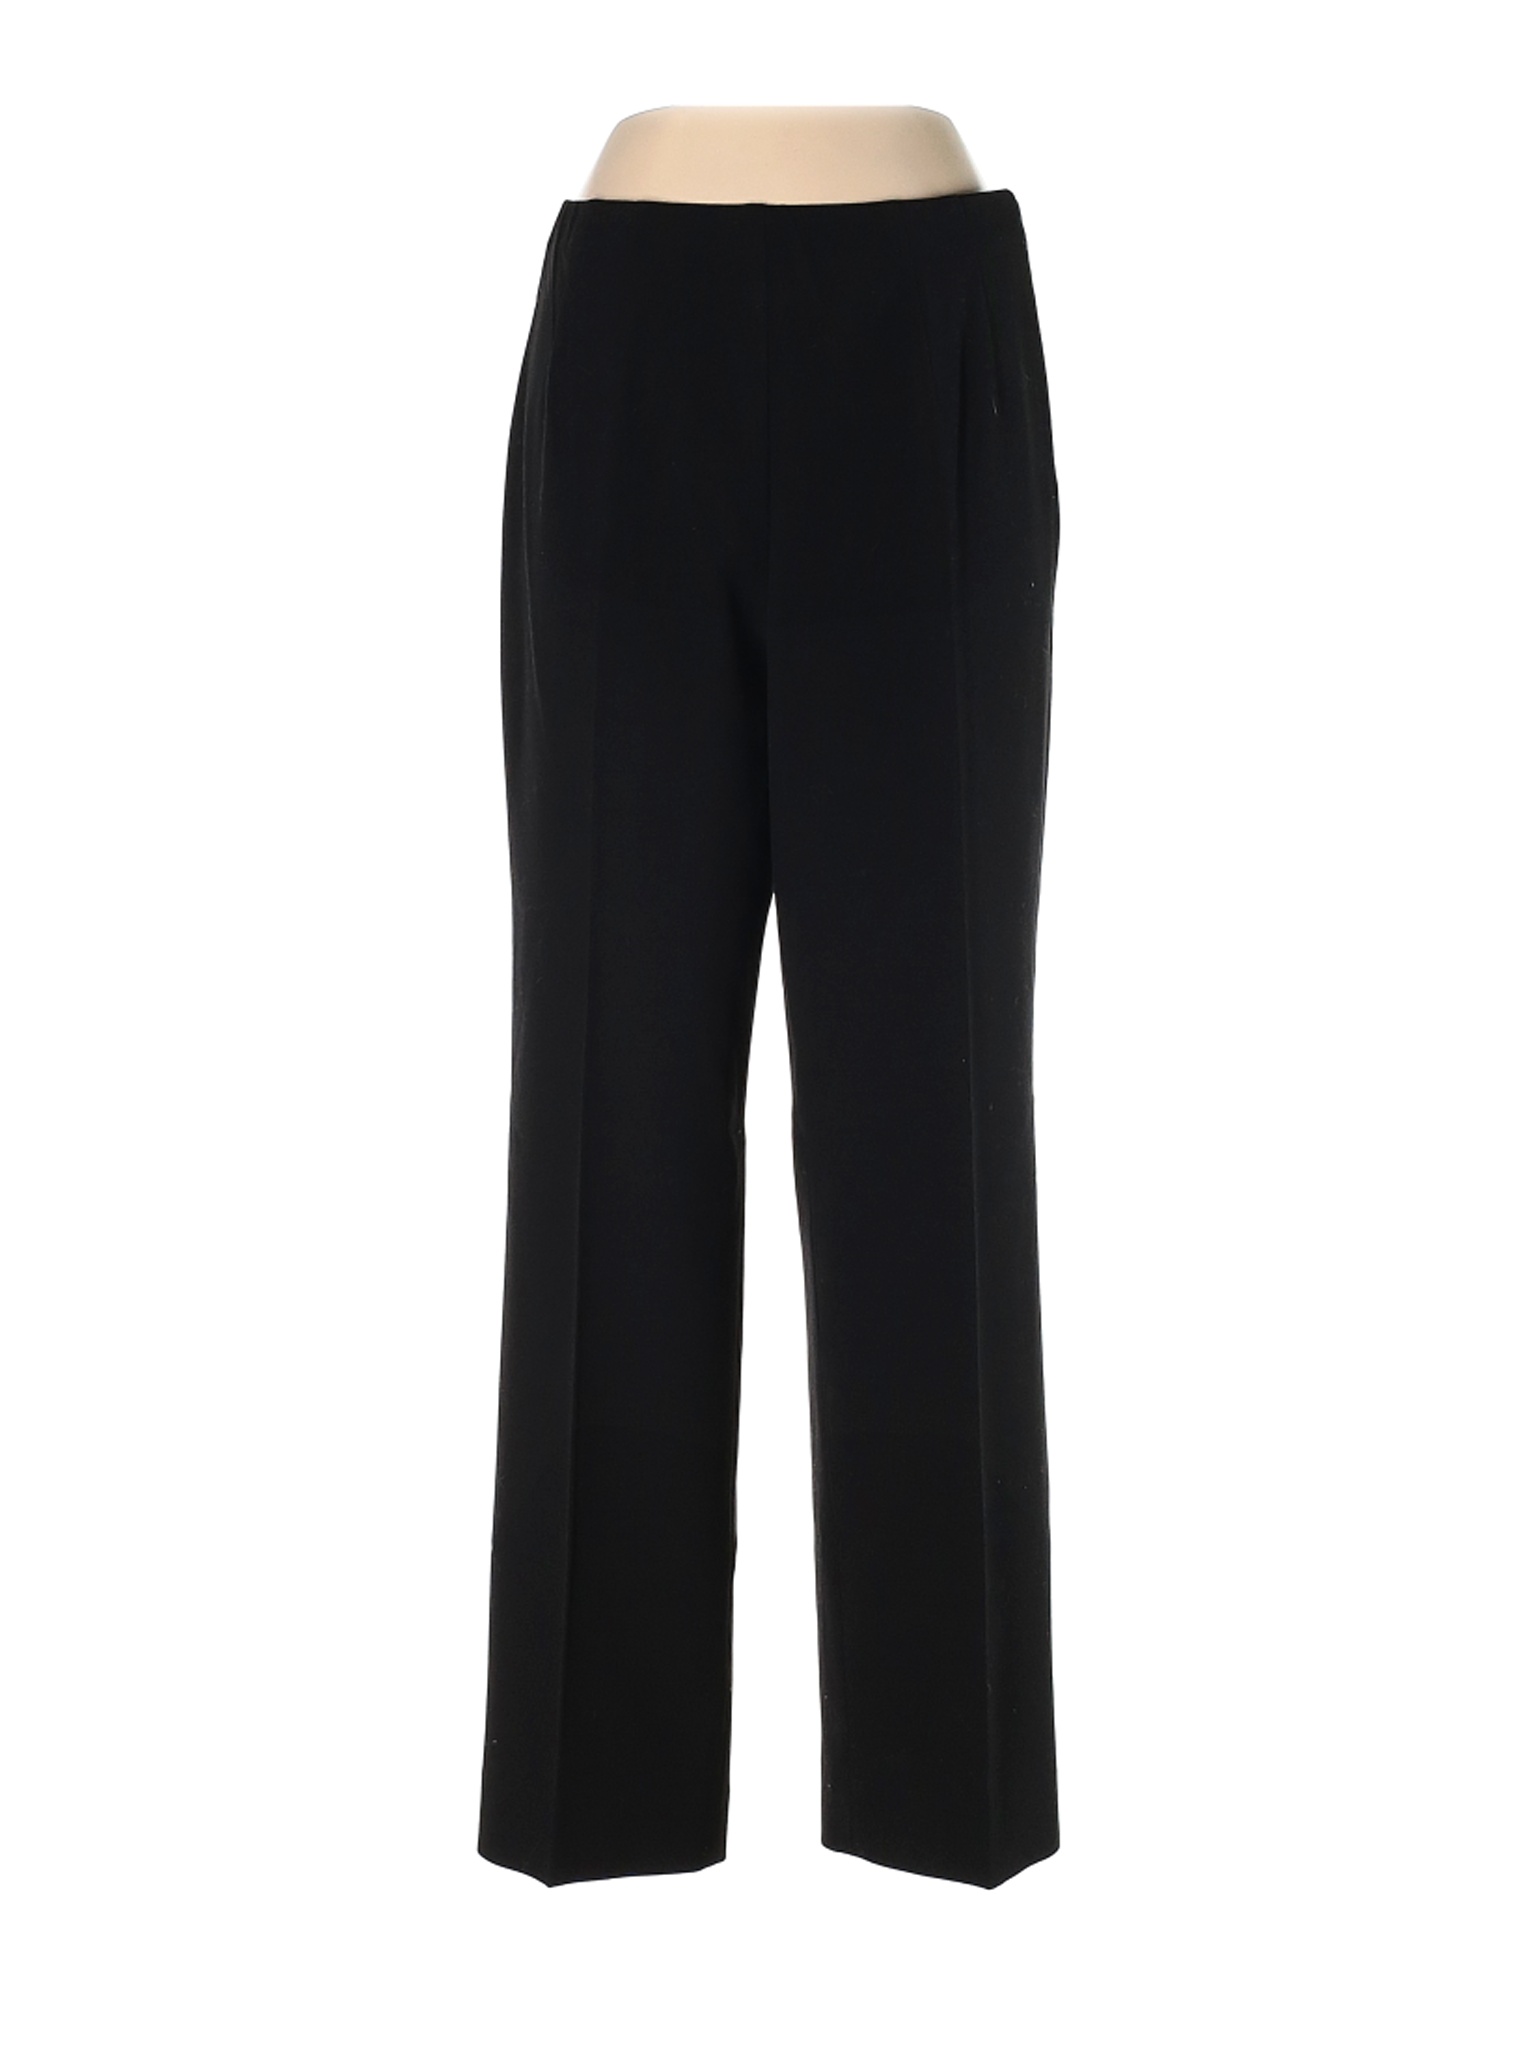 Coldwater Creek Women Black Dress Pants 6 | eBay